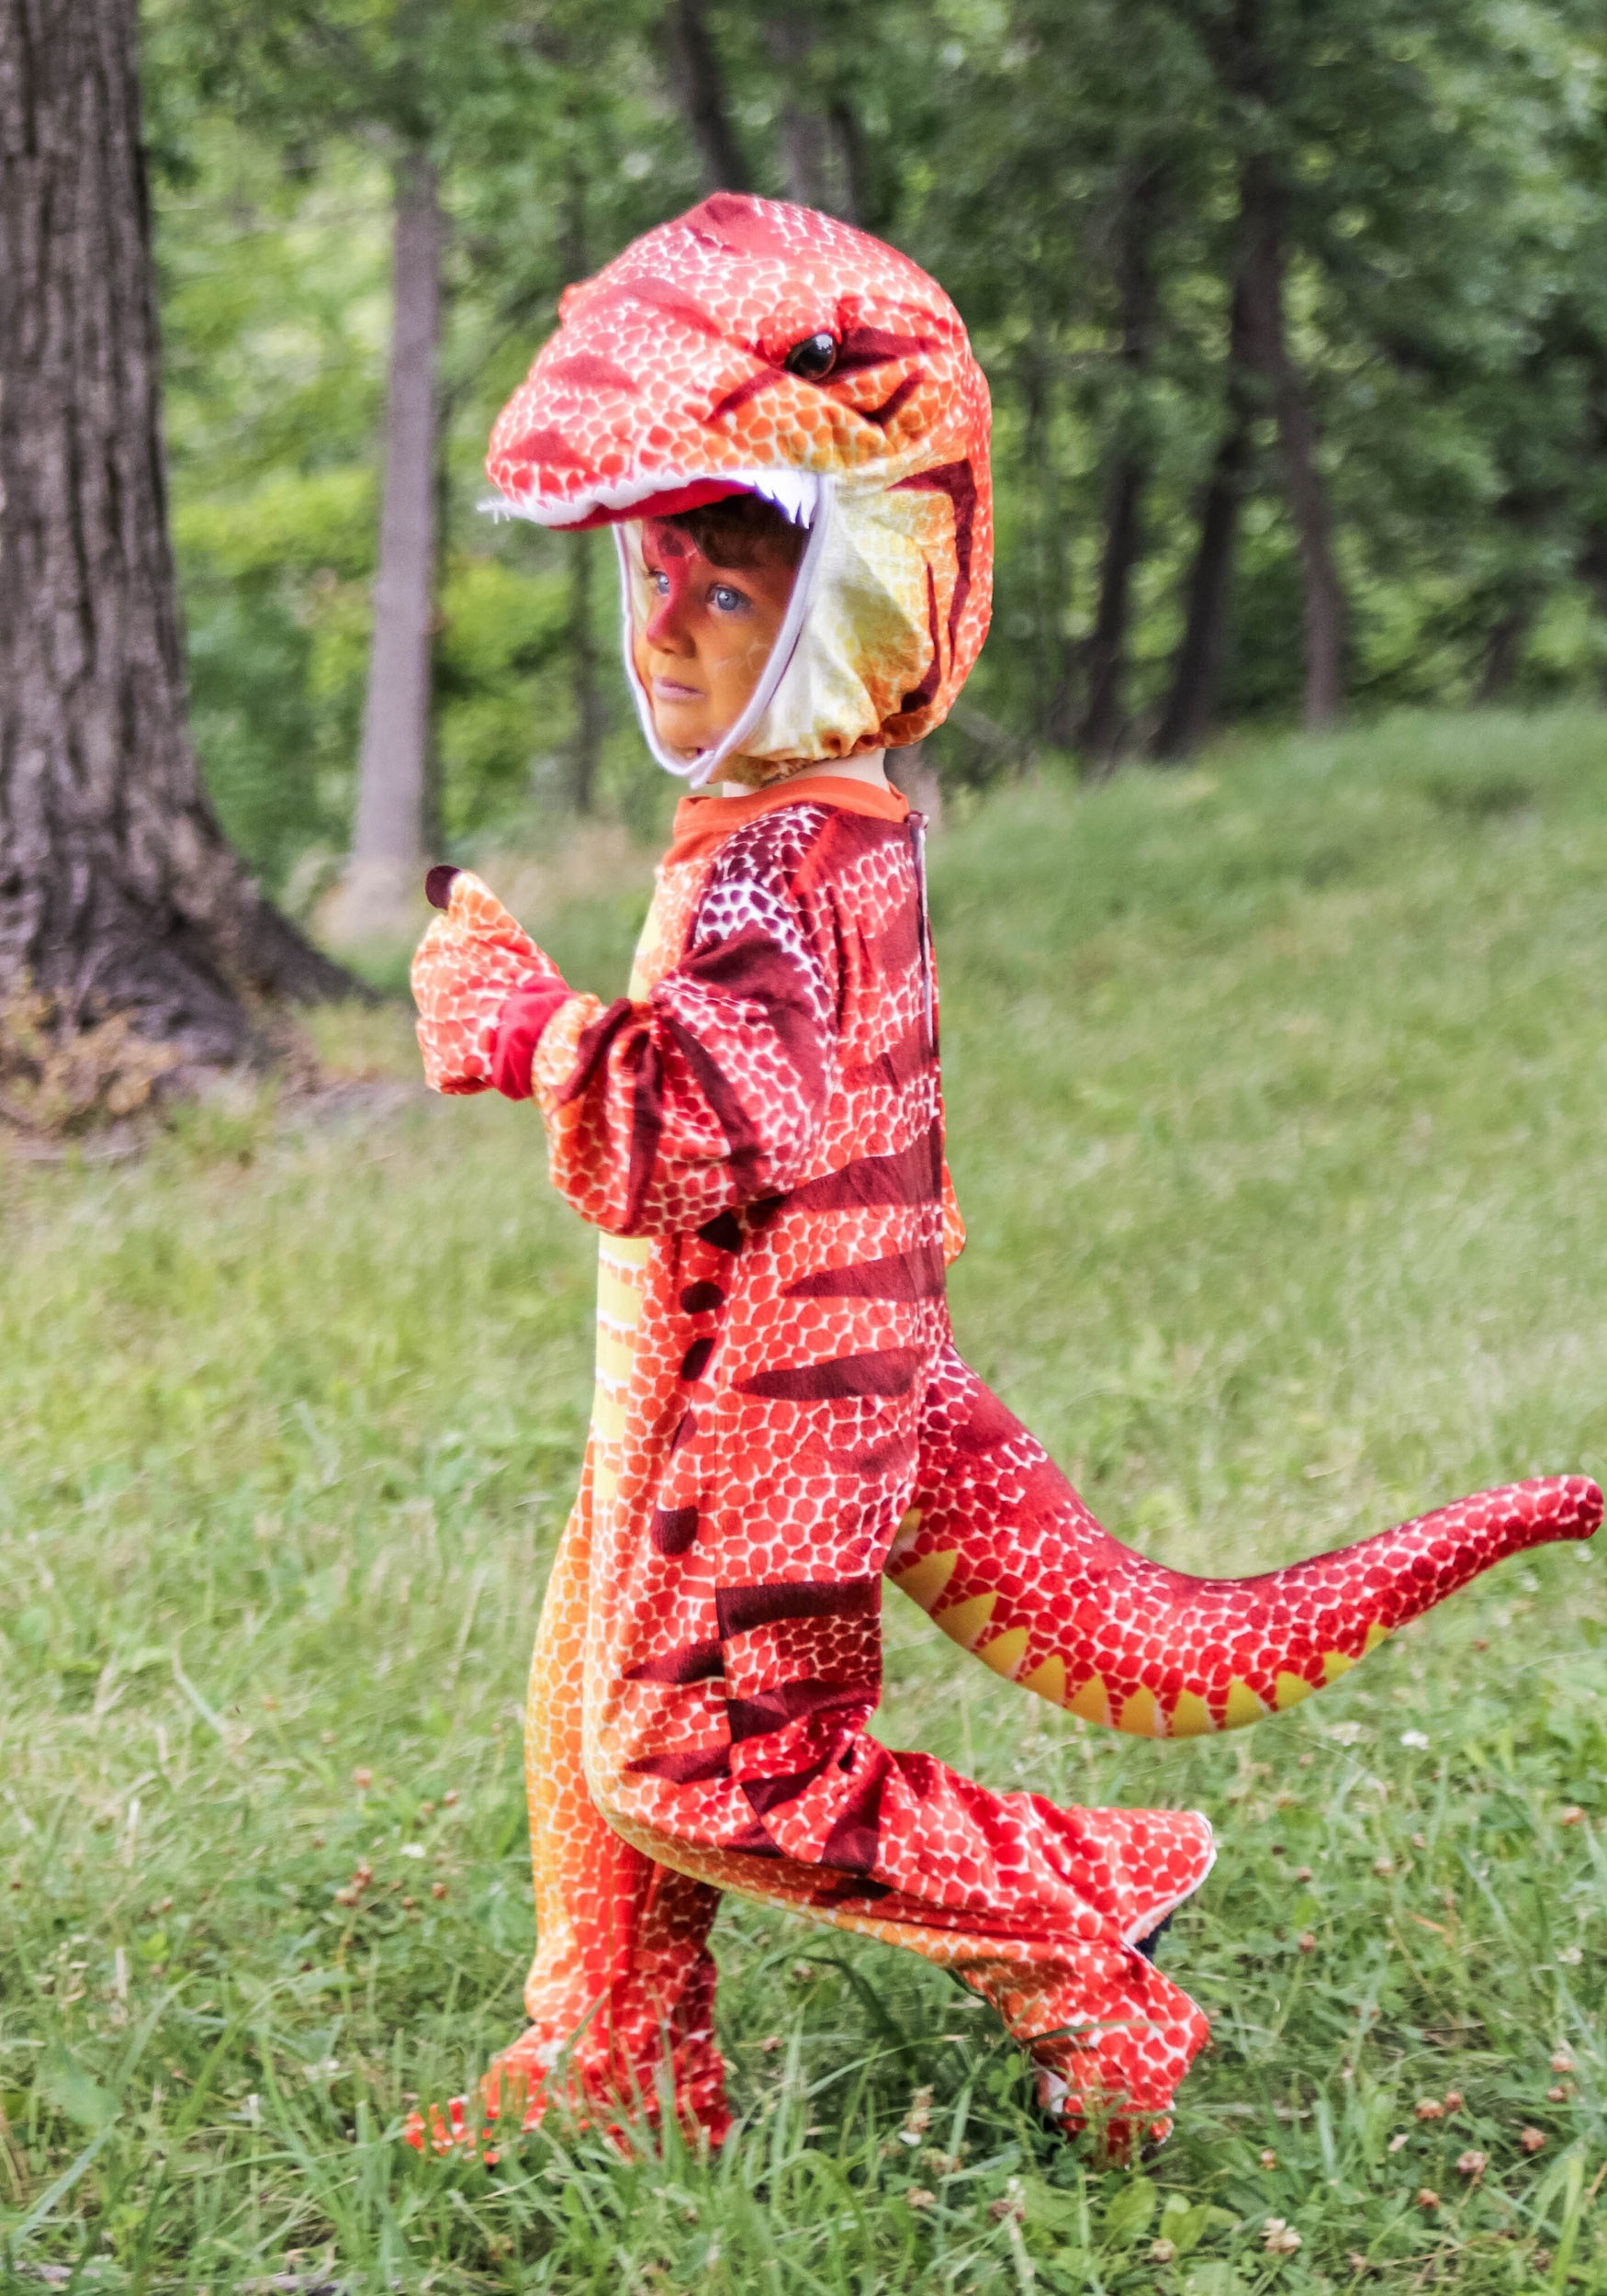 Child Rusty T-Rex Dinosaur Costume